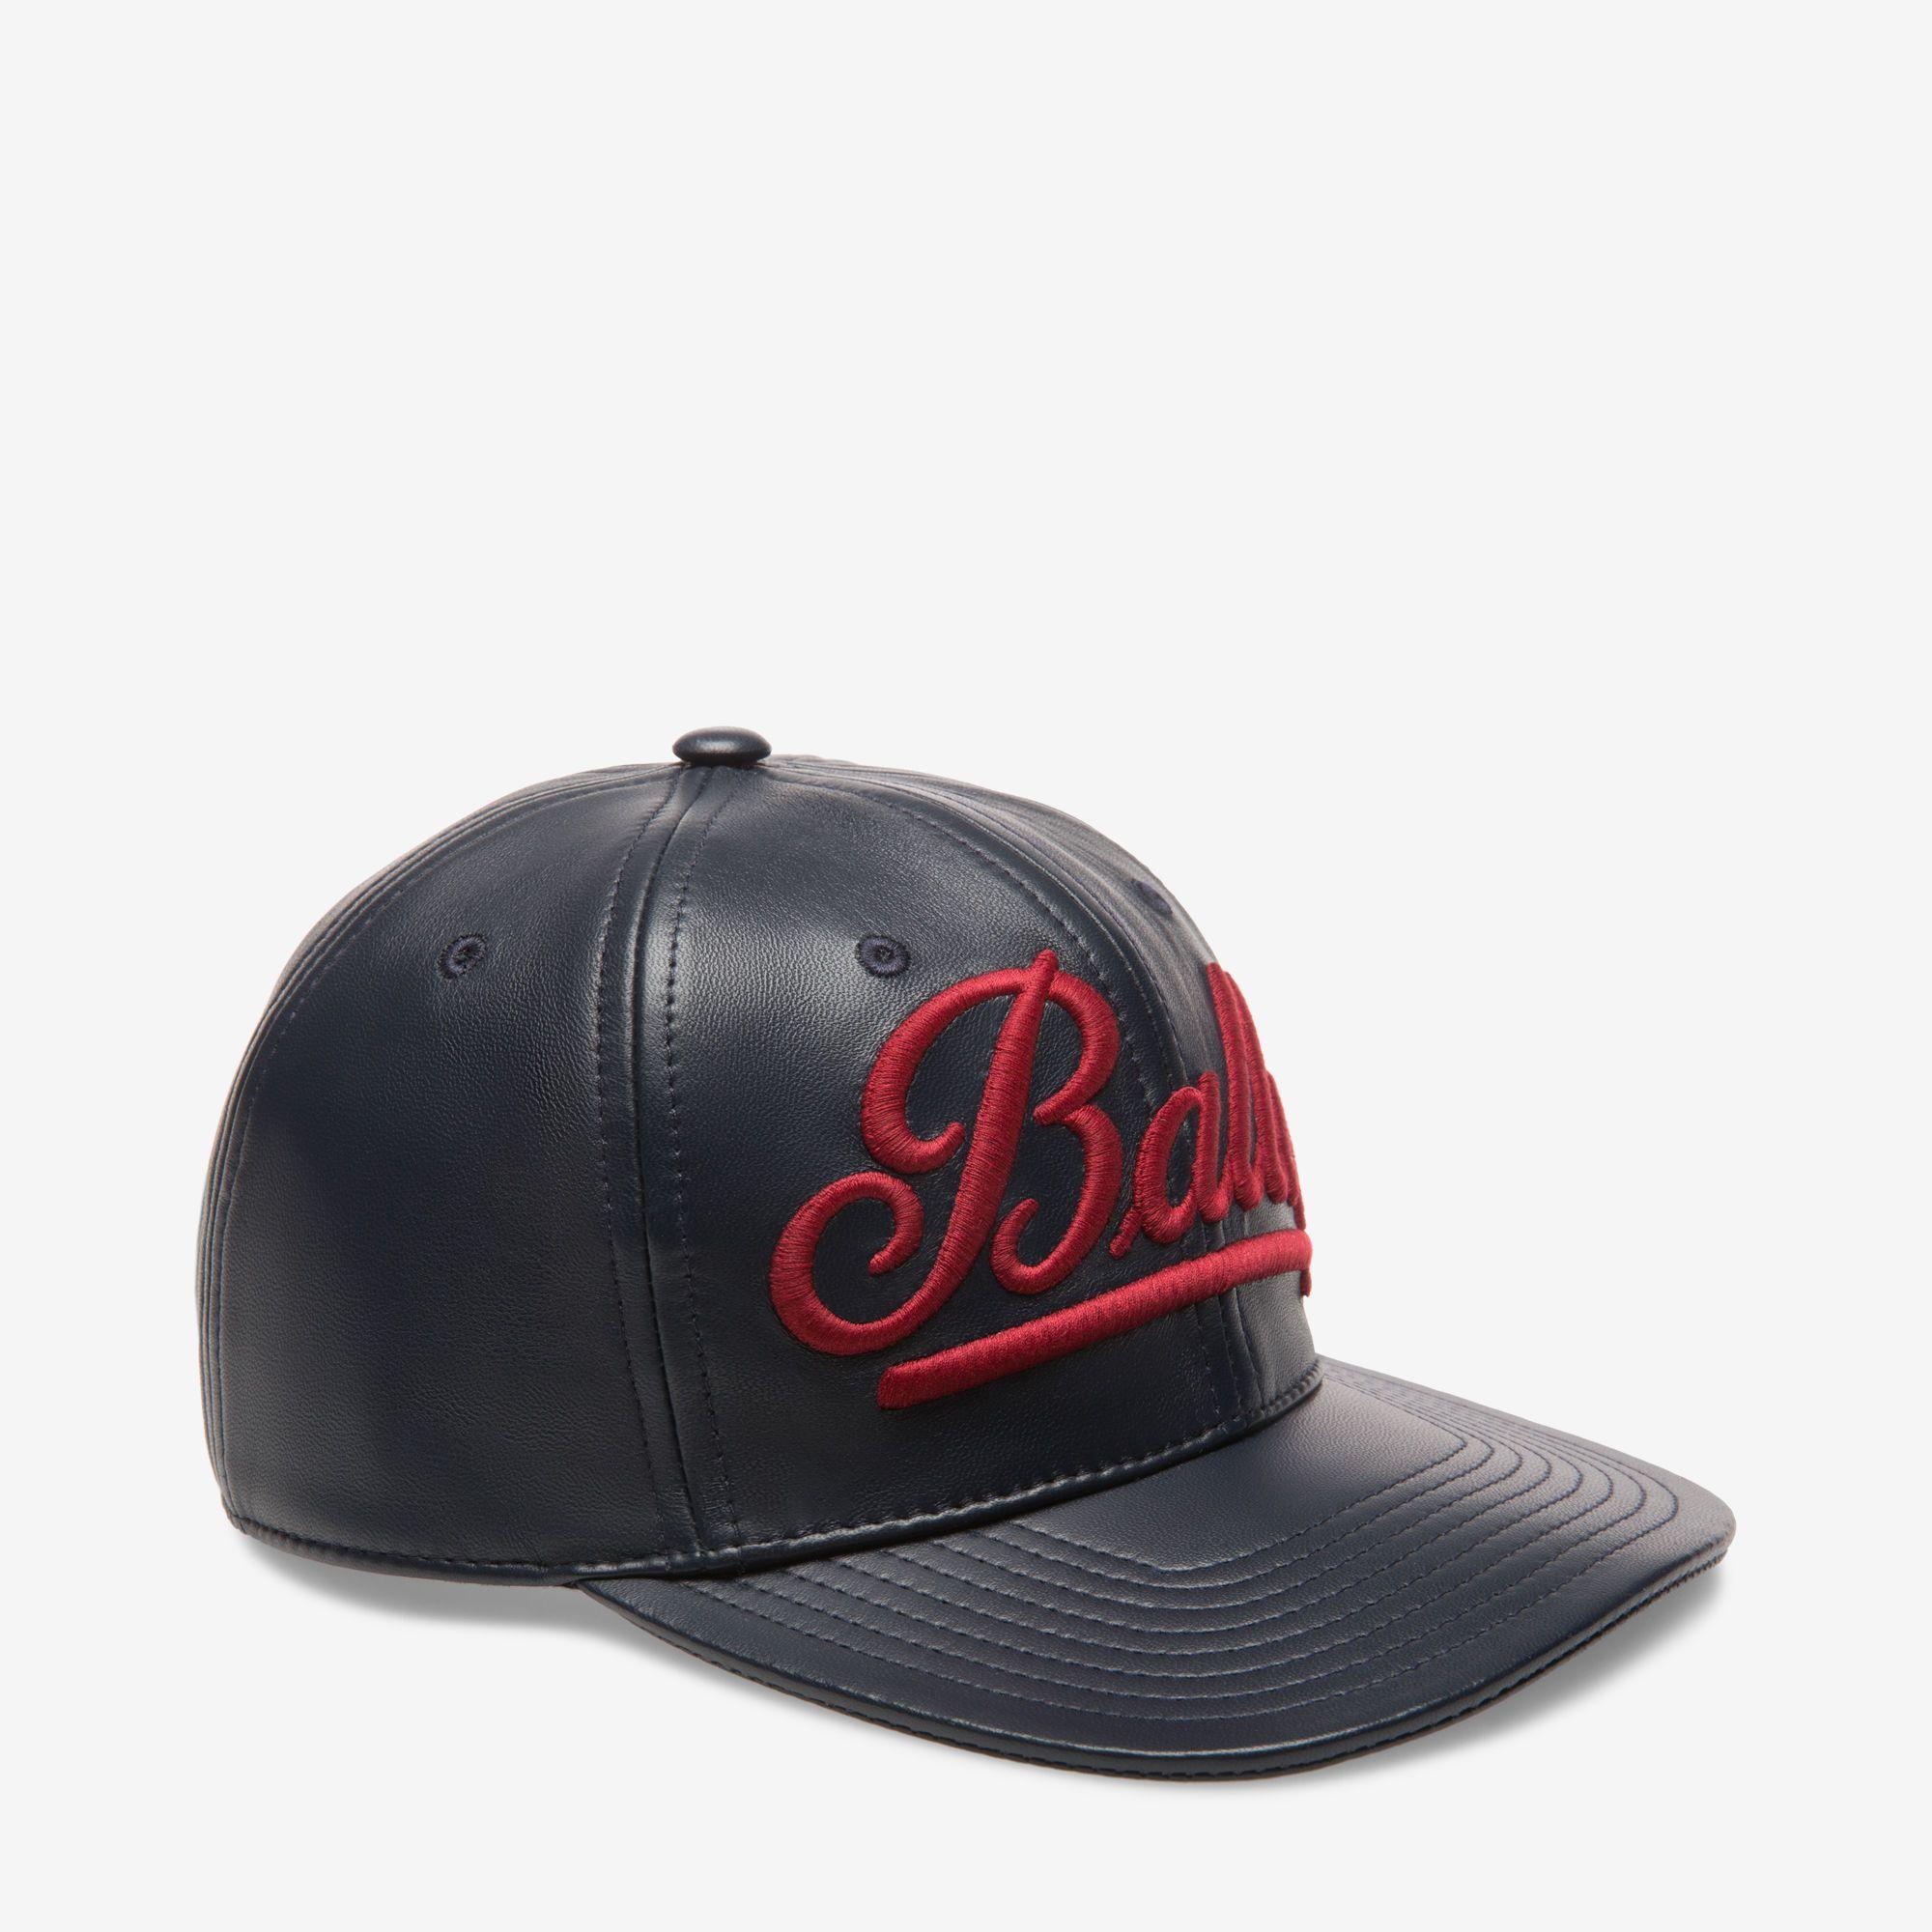 Bally Logo - BALLY LOGO BASEBALL CAP. Men's Hats